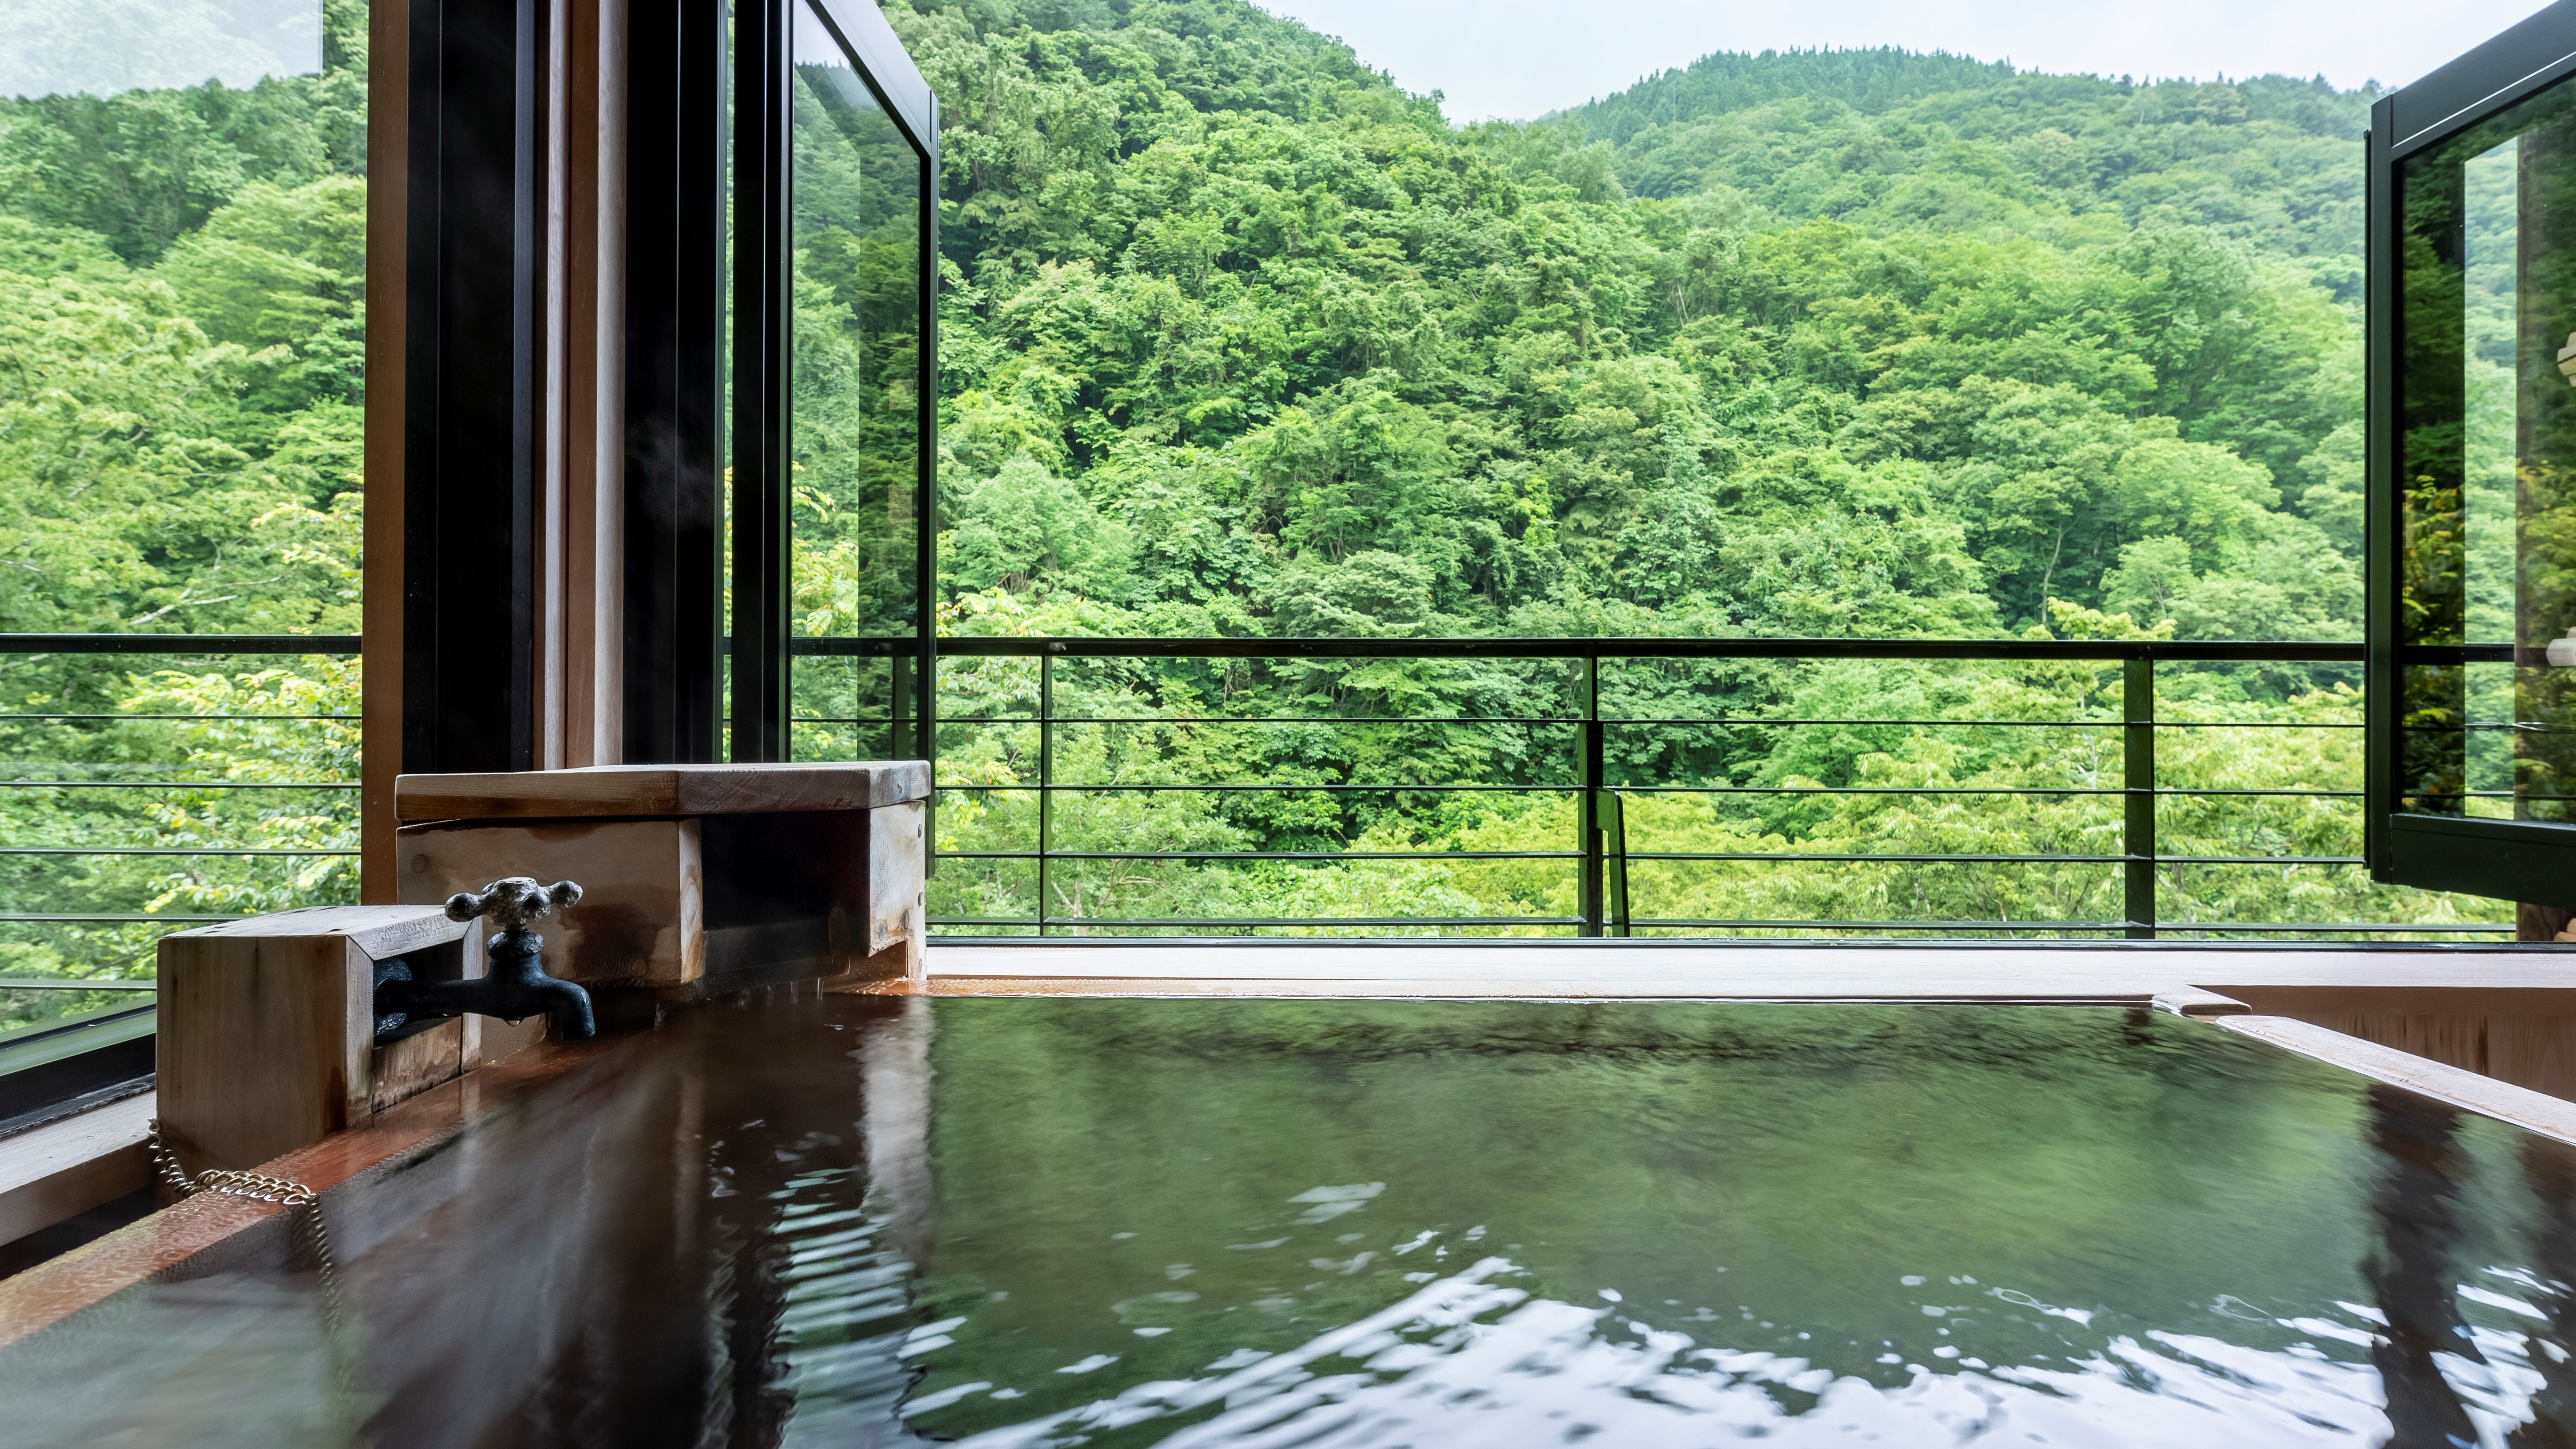 ■藤　松川渓谷の深緑に囲まれて、心から寛ぐ露天風呂